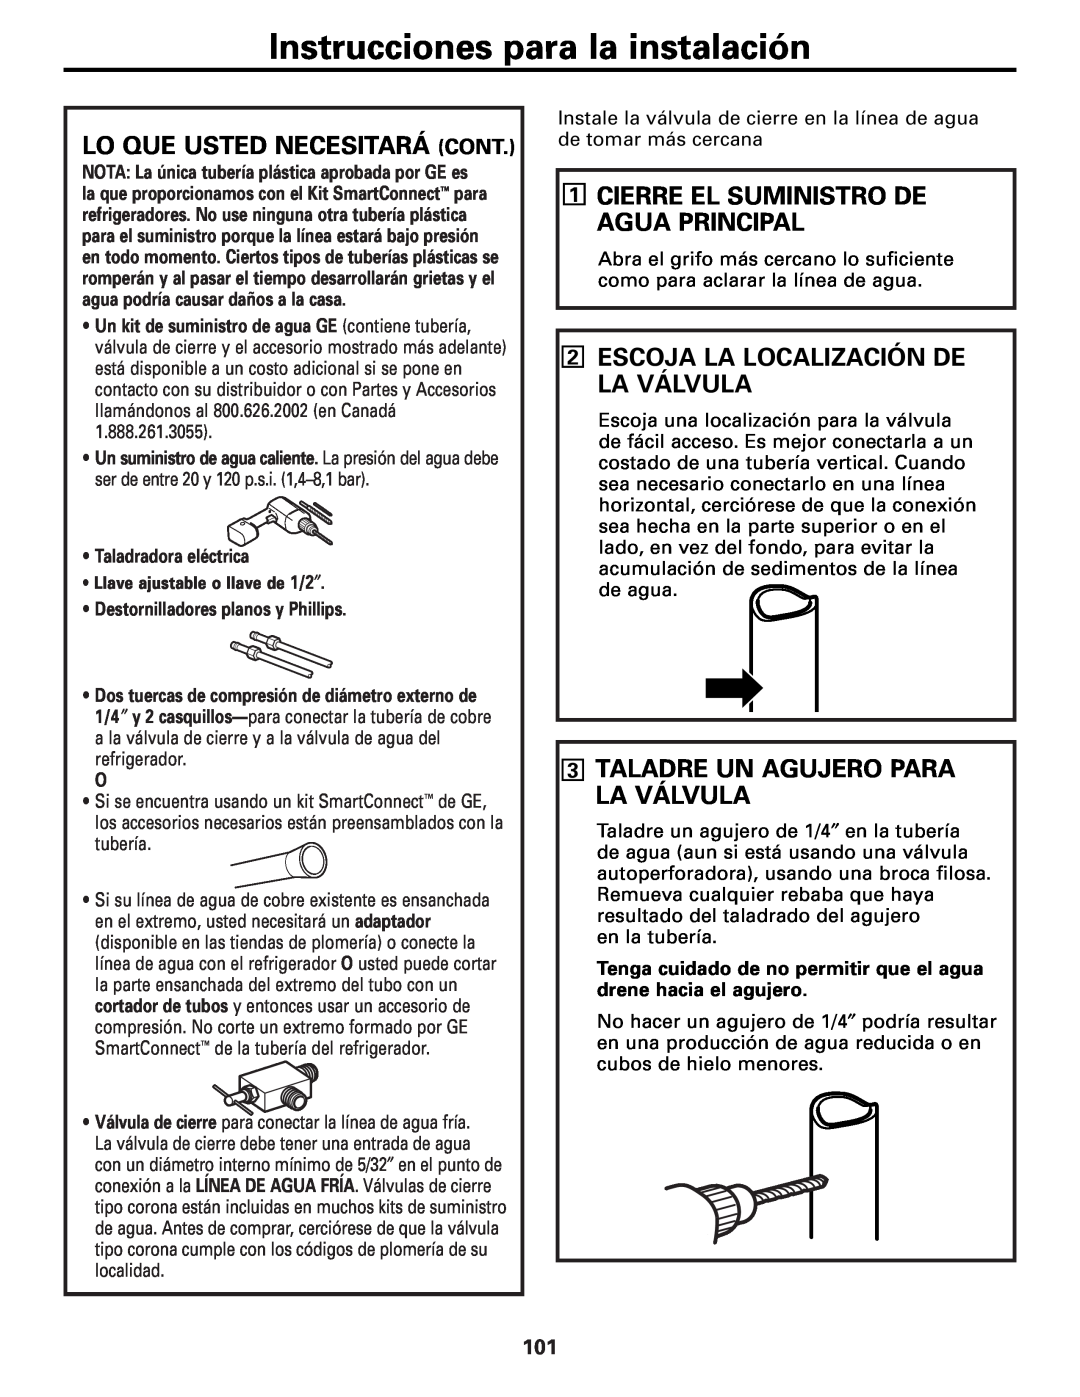 GE MODELS 23 AND 25 Lo Que Usted Necesitará Cont, Cierre El Suministro De Agua Principal, Taladradora eléctrica 